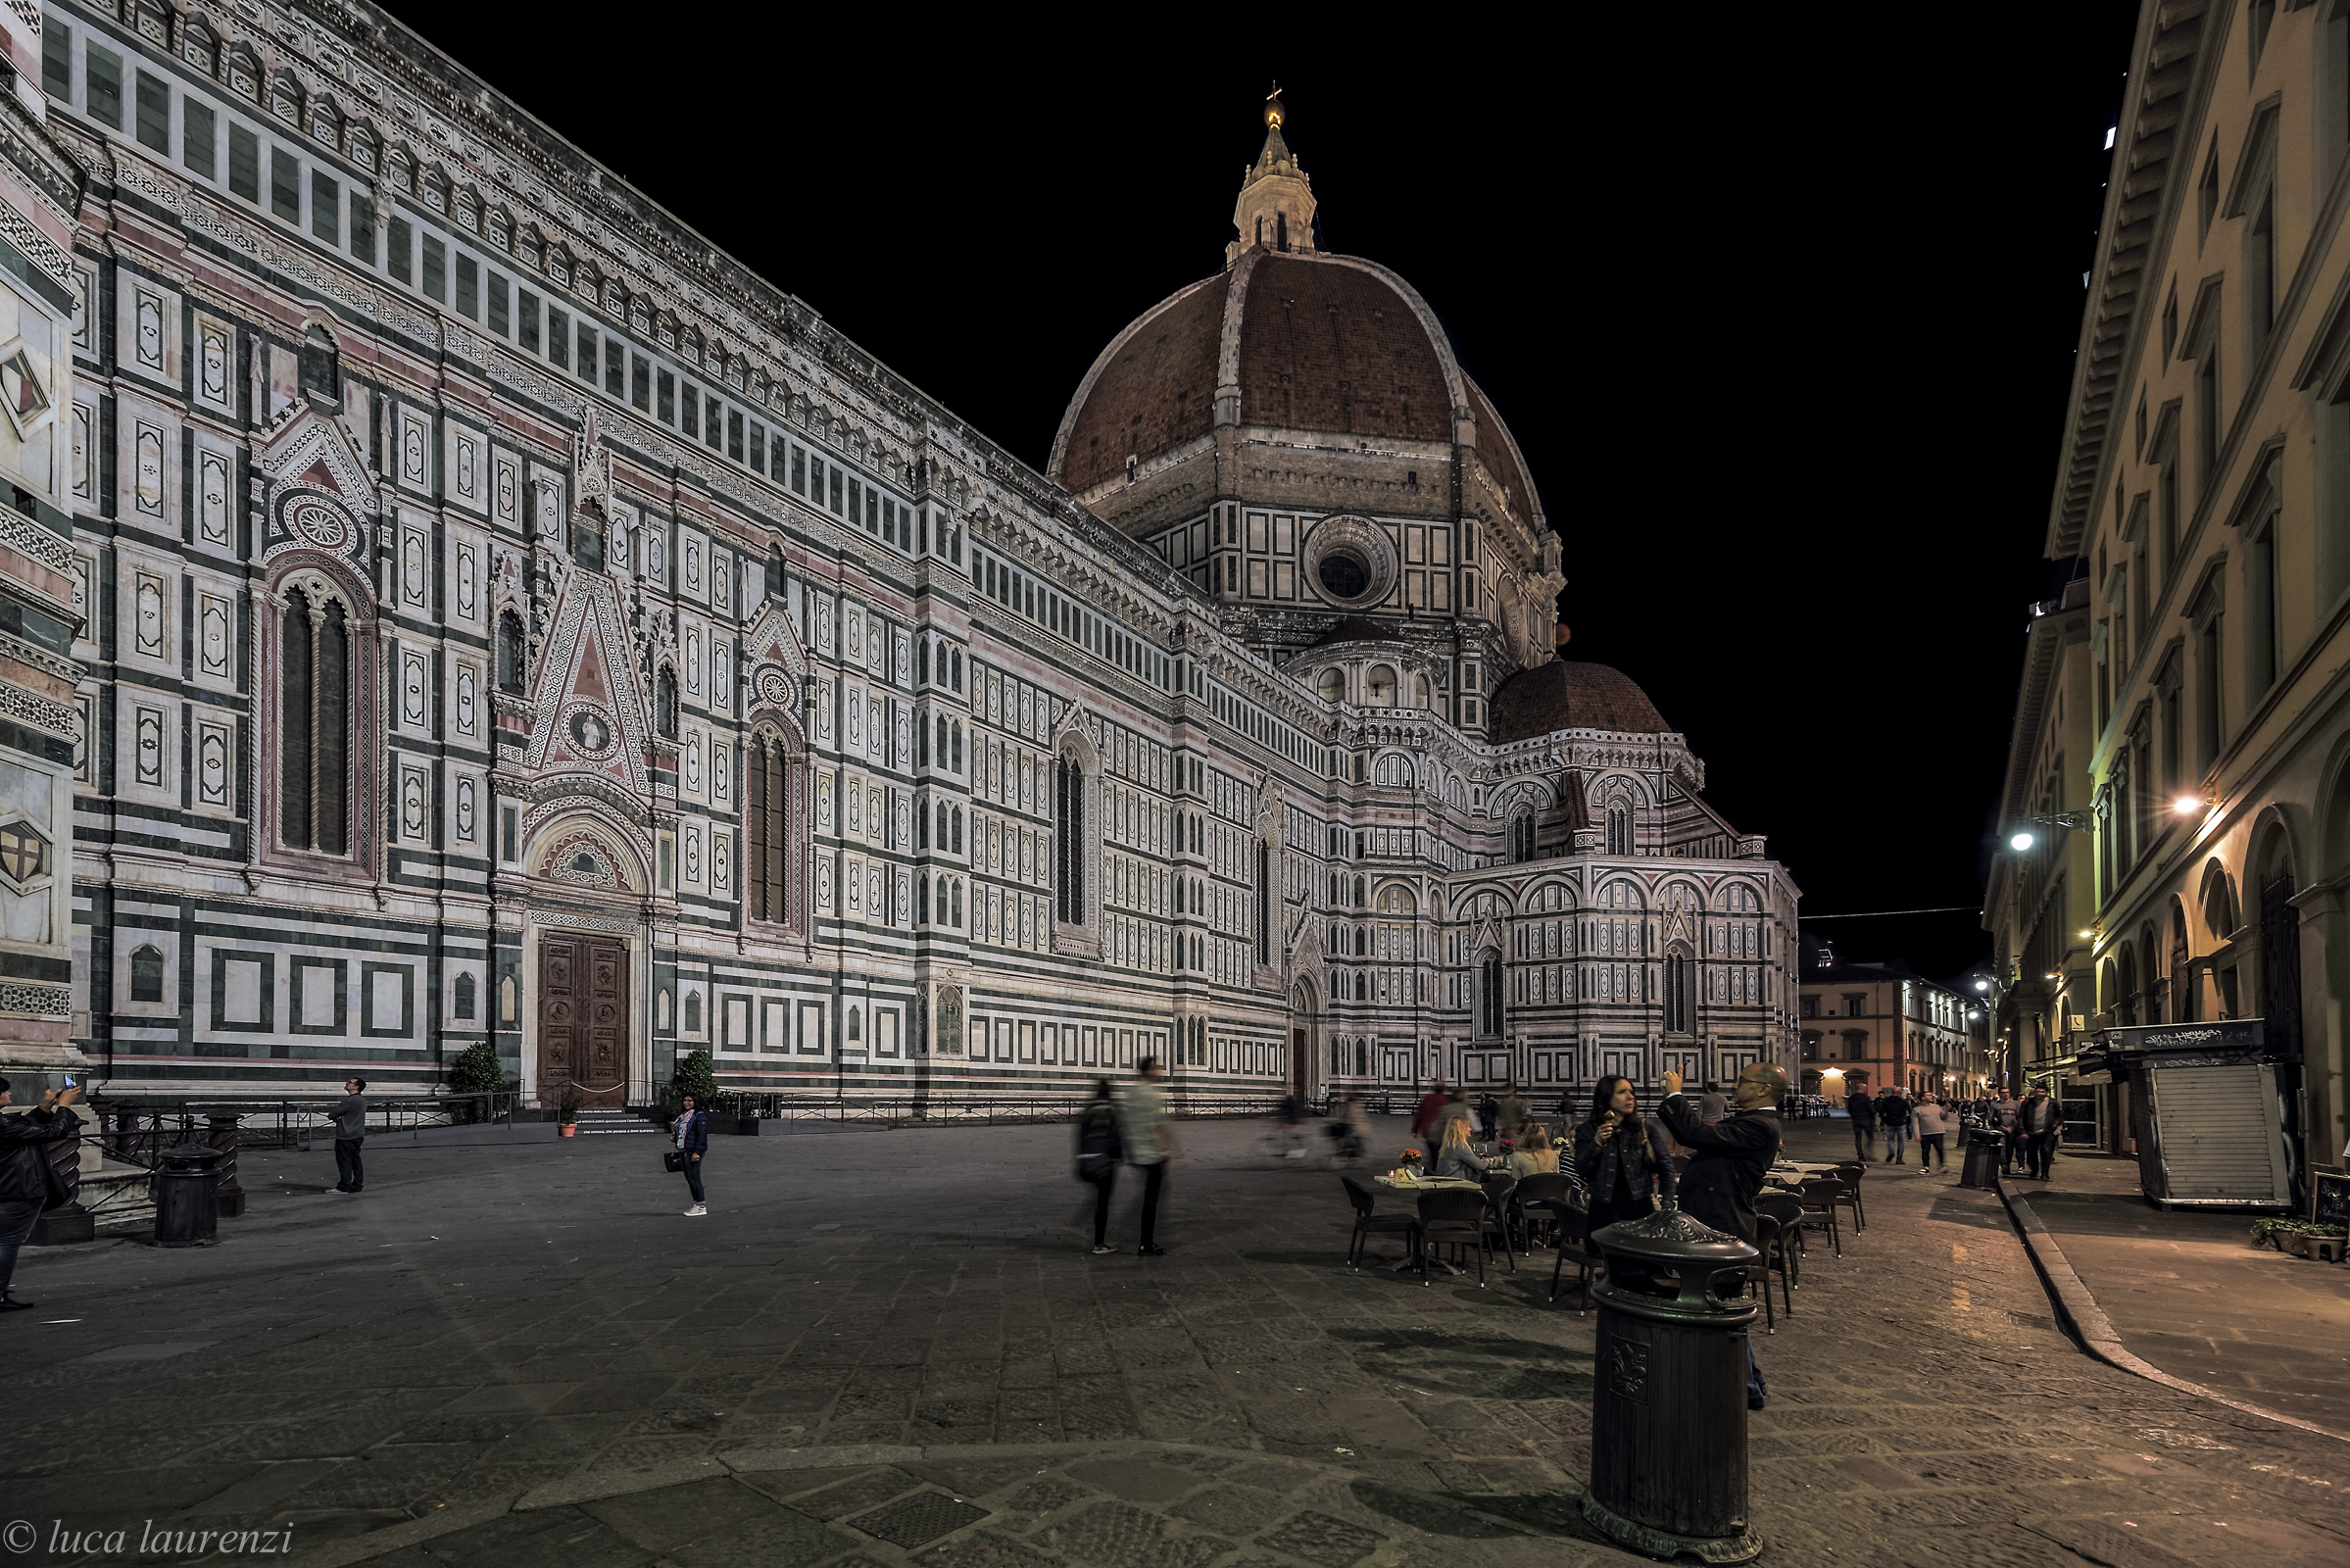 The Duomo at night...